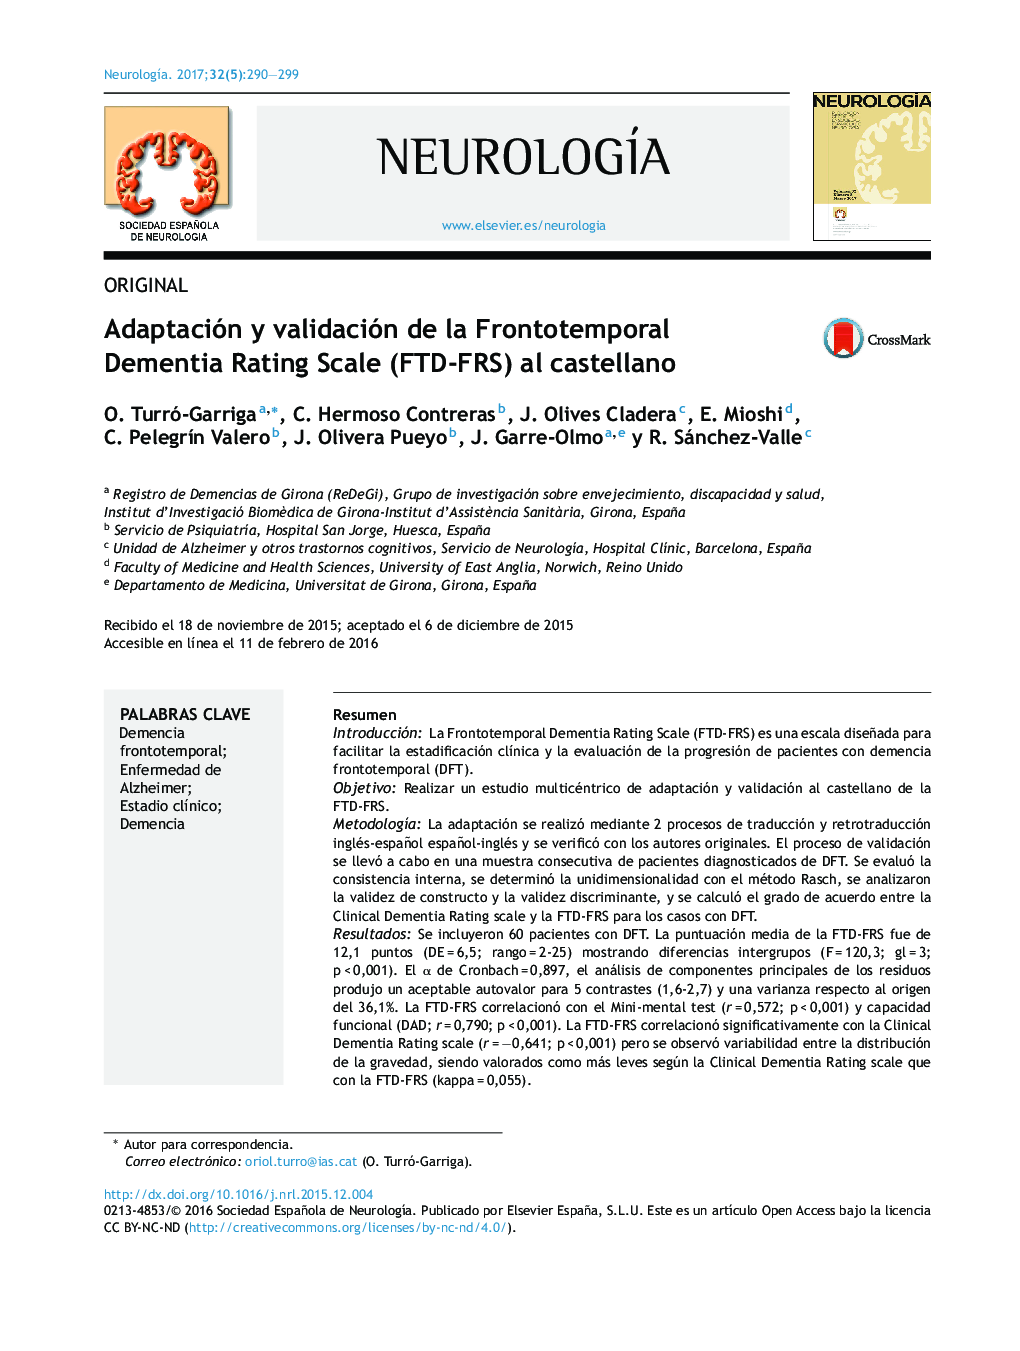 OriginalAdaptación y validación de la Frontotemporal Dementia Rating Scale (FTD-FRS) al castellanoAdaptation and validation of a Spanish-language version of the Frontotemporal Dementia Rating Scale (FTD-FRS)